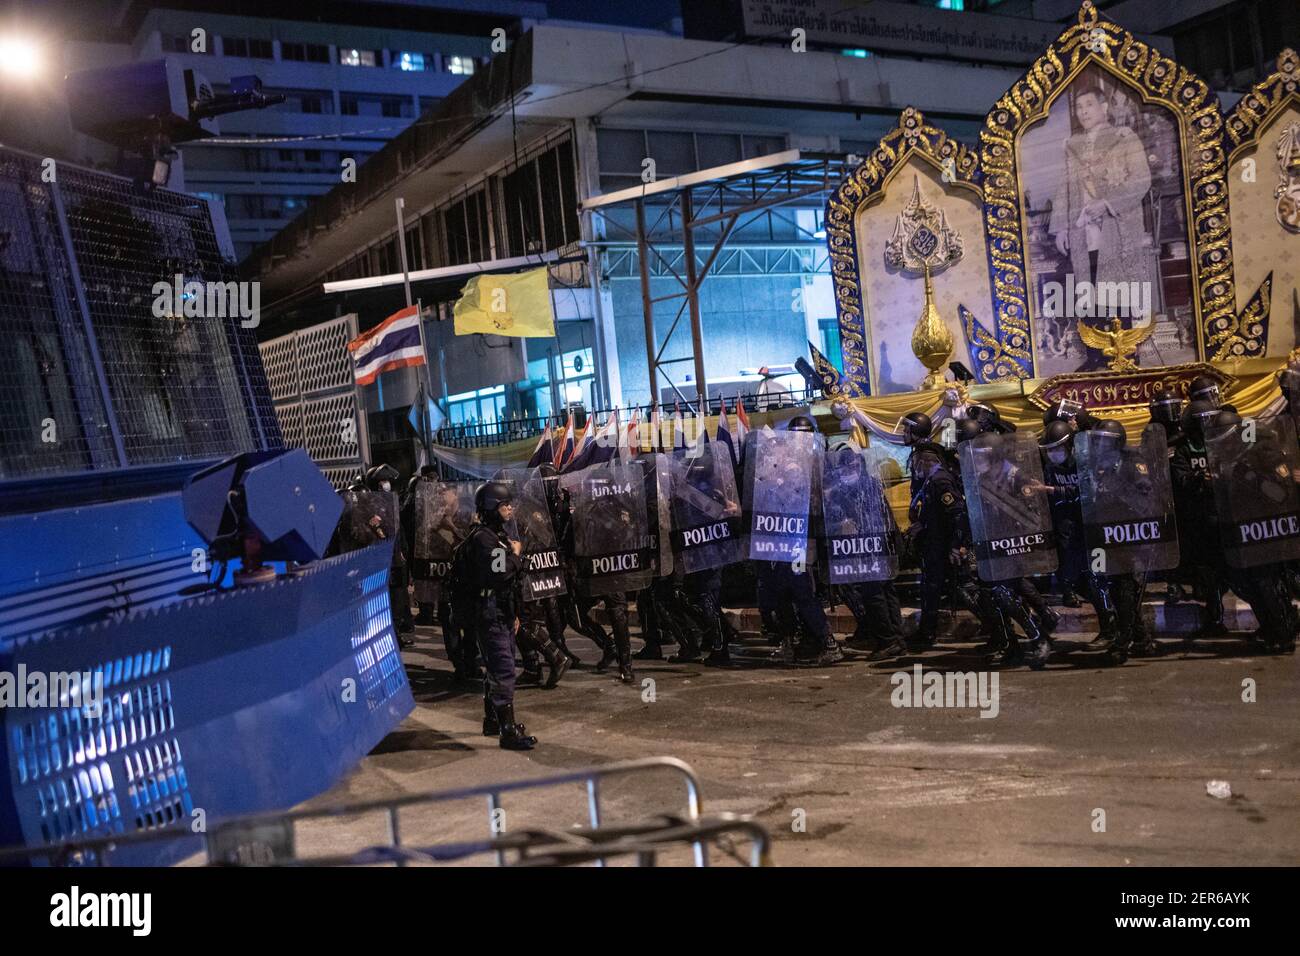 Neben einem Porträt des thailändischen Königs Maha Vajiralongkorn während einer Anti-Regierungsdemonstration in Bangkok stehen die Bereitschaftspolizisten hinter ihren Schilden.Tausende von prodemokratischen Demonstranten versammelten sich in der Vibhavadi Rangsit Road vor dem Infanterie-Regiment 1st in der Nähe des Premierministers und forderten den Rücktritt des thailändischen Premierministers und Die Reform der Monarchie in Bangkok, Thailand. Die Demonstranten verurteilten auch die Anwendung des ‘Lese majeste Gesetz' unter dem Abschnitt 112 des Strafgesetzbuches. Der von ‘FreeYouth' organisierte Protest endete mit mehreren Zusammenstößen, dem Einsatz von Wasserwerfern, Tränengas Stockfoto